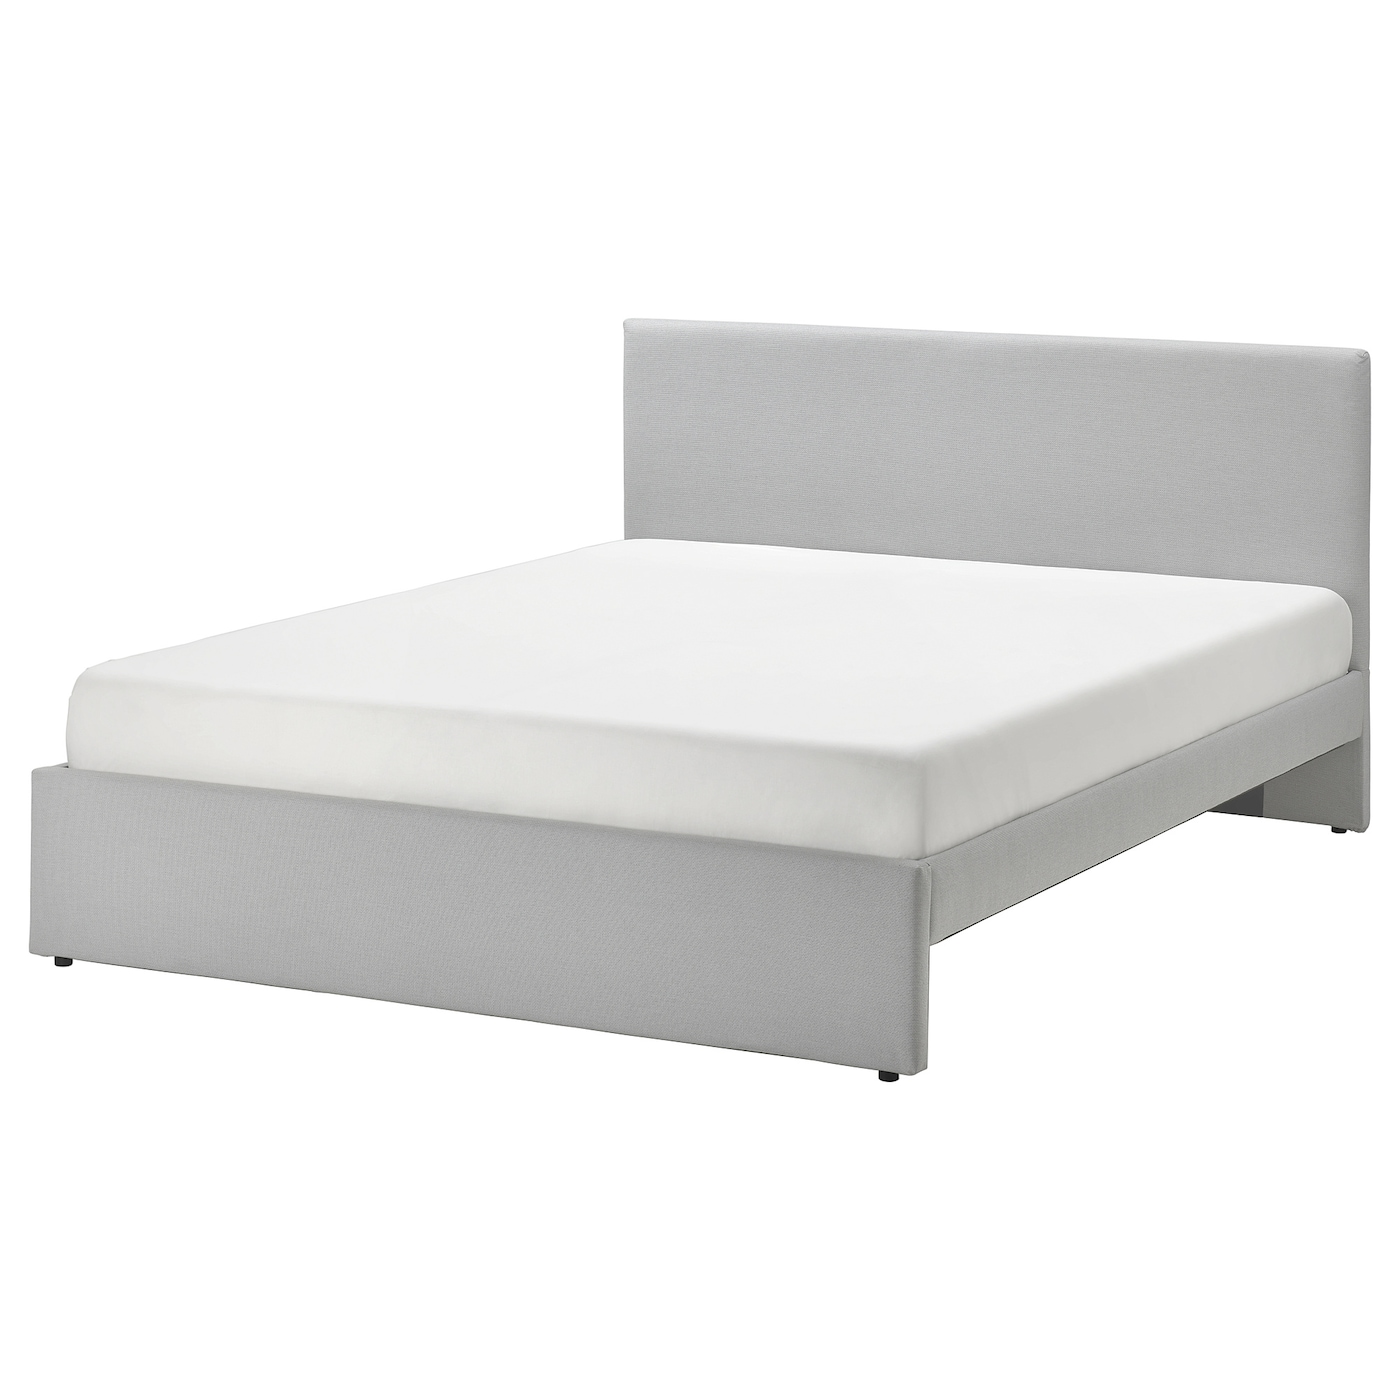 Двуспальная кровать - IKEA GLADSTAD, 200х140 см, светло-серый, ГЛАДСТАД ИКЕА